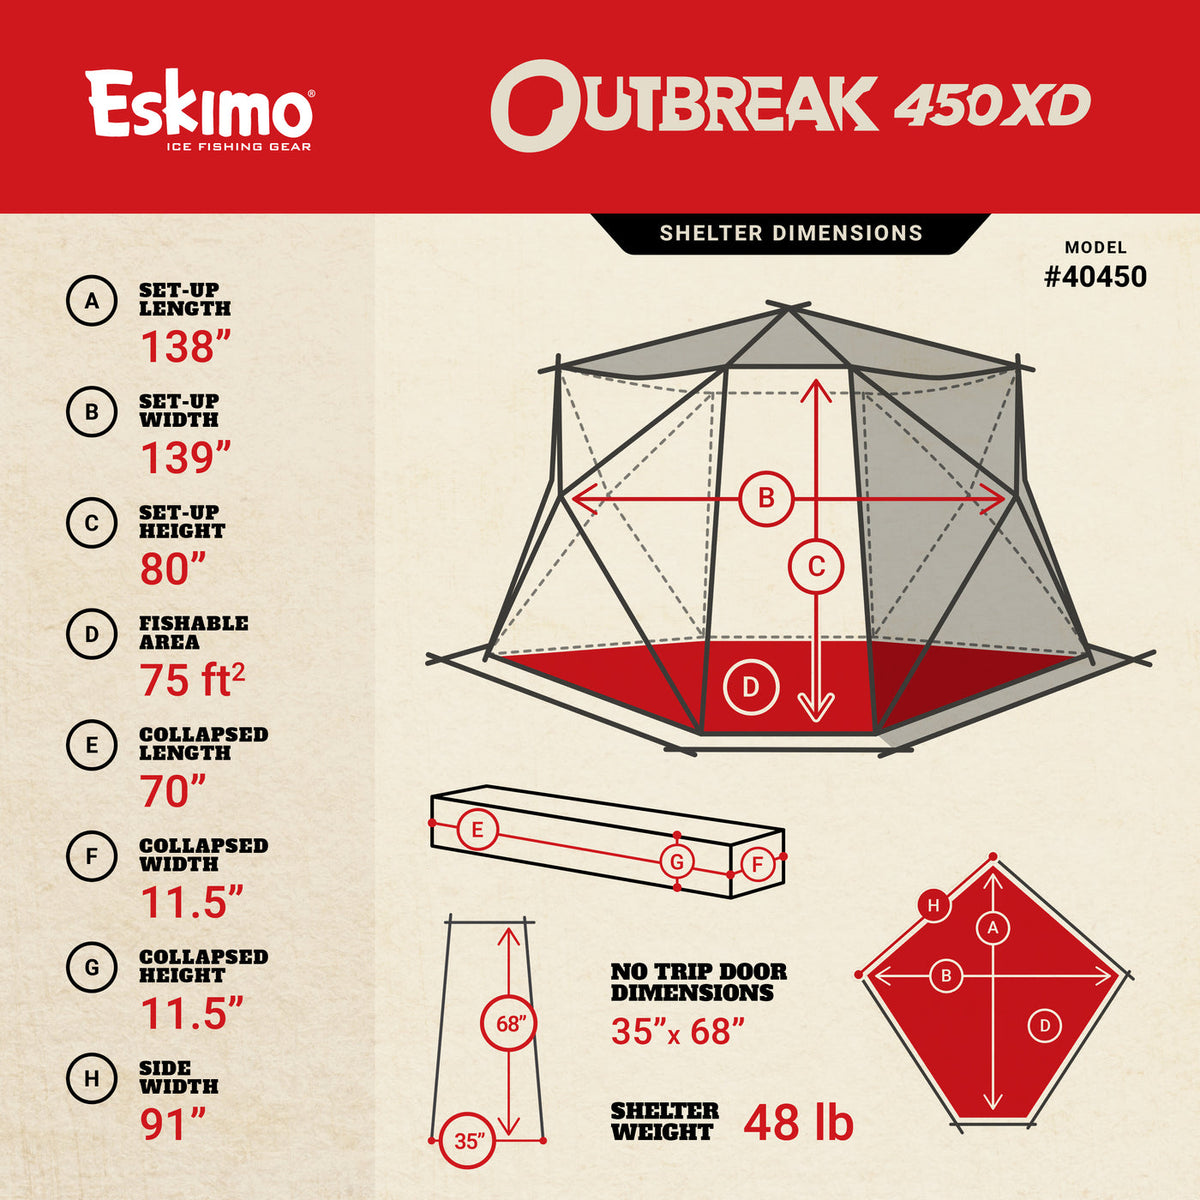 Eskimo Outbreak 450XD Plaid